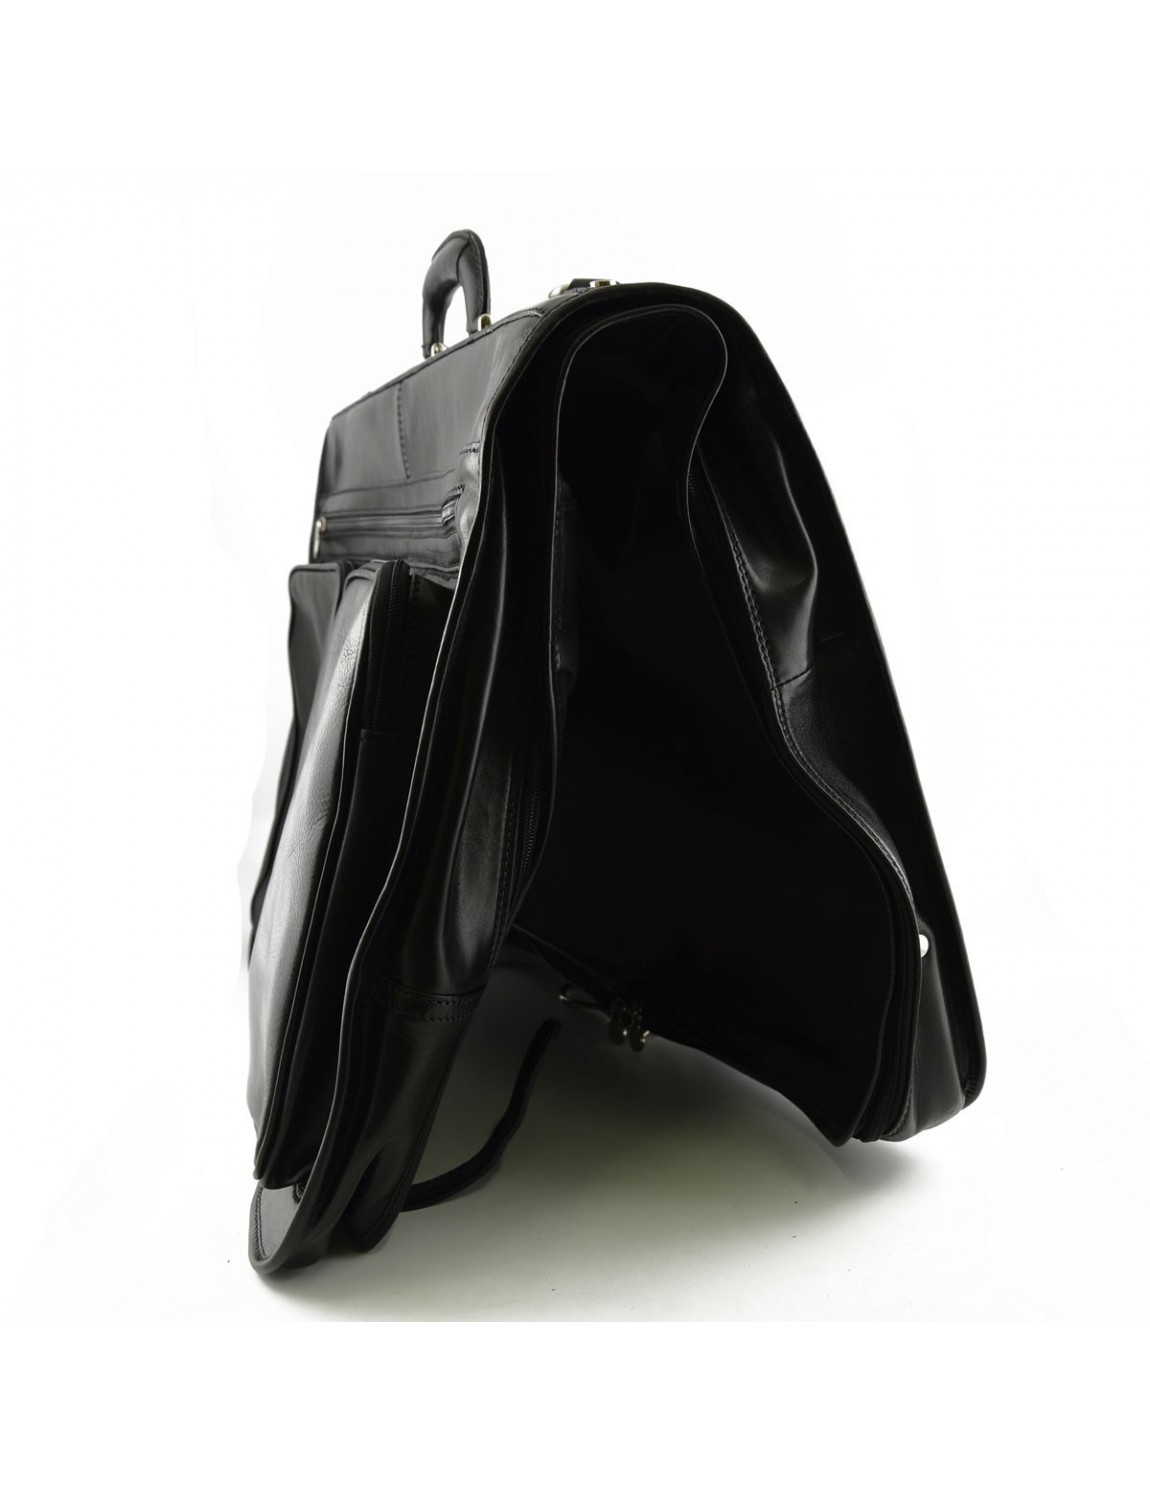 Skórzana torba na ubrania z 2 wieszakami, wyposażona w haczyk do zawieszenia oraz odpinany pasek na ramię z oparciem na ramię.